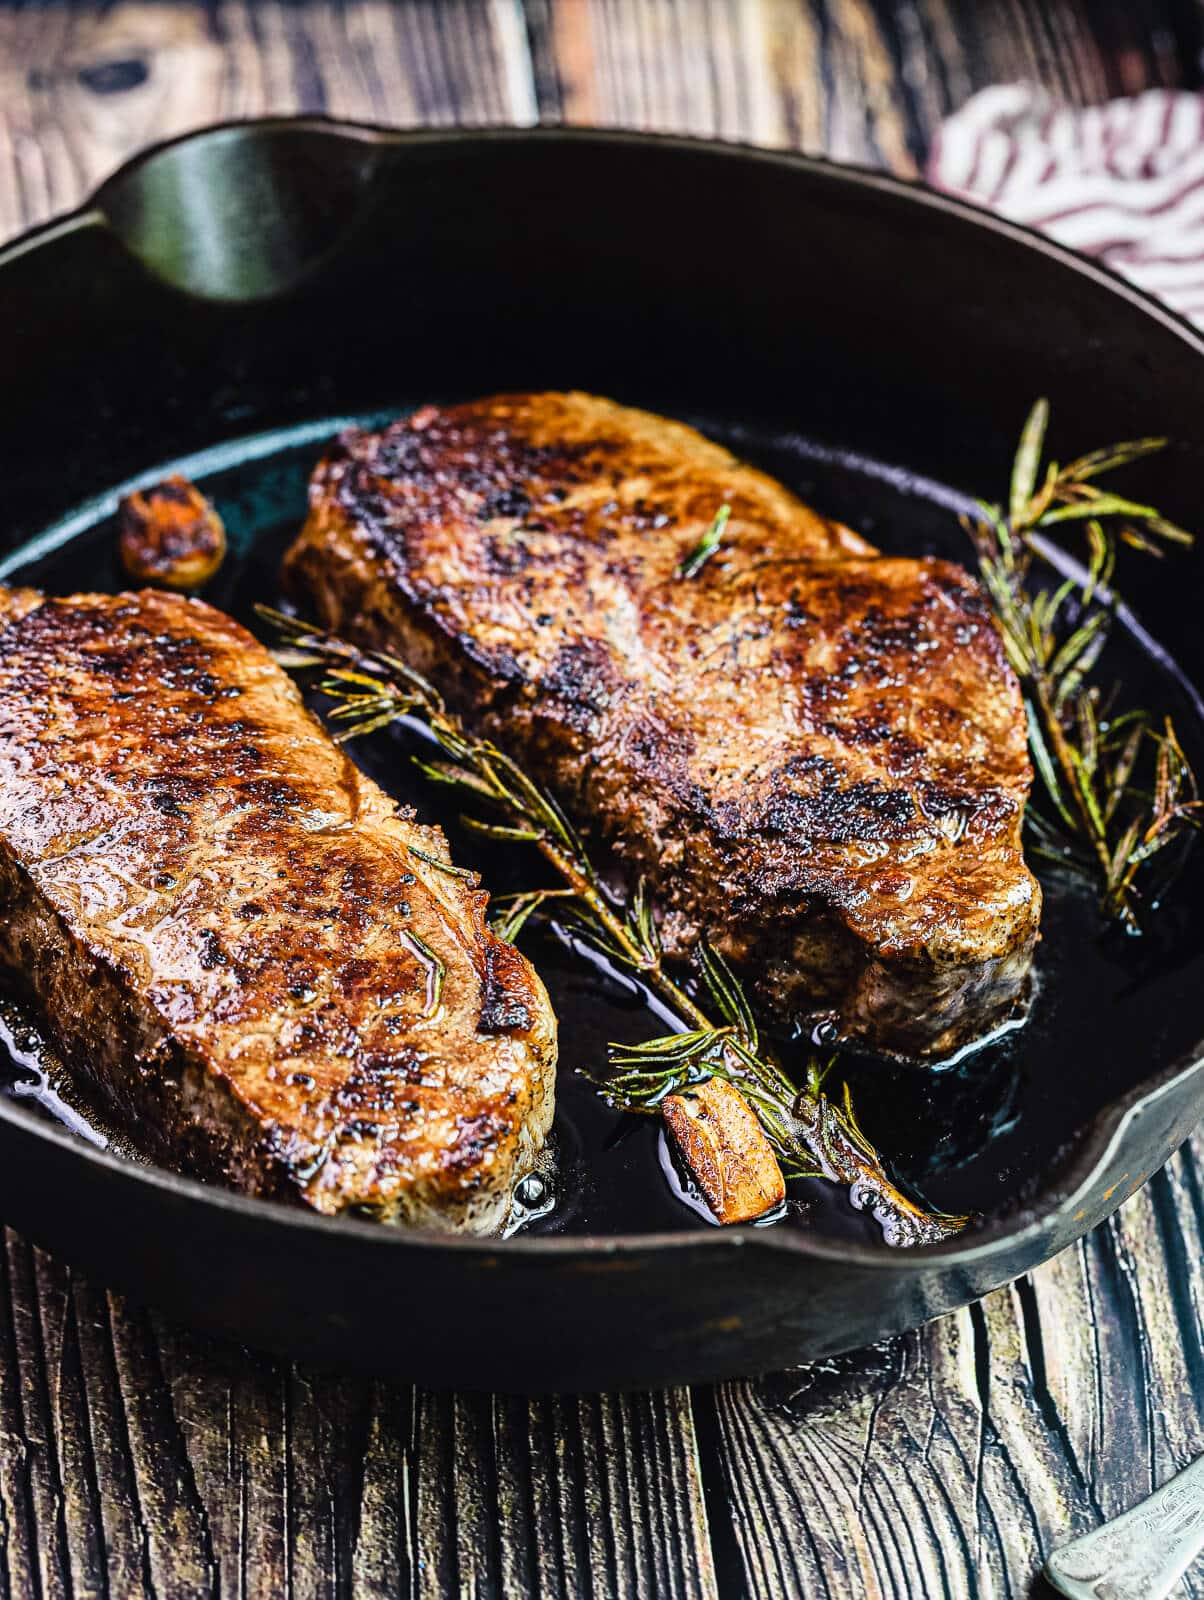 Pan-Seared Strip Steak Recipe